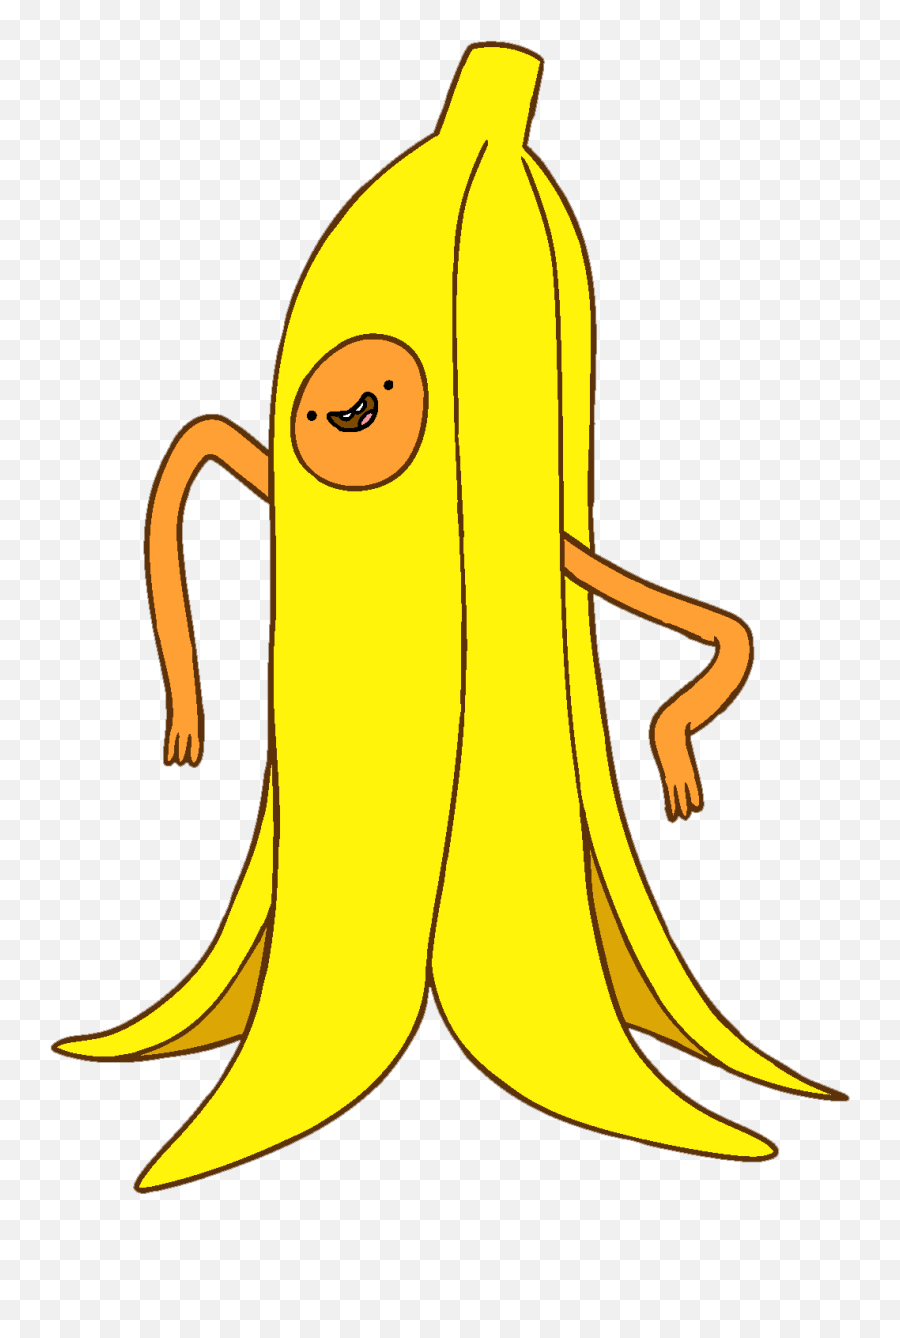 Banana Guy - Banana Long Adventure Time Emoji,Conchita Emoji